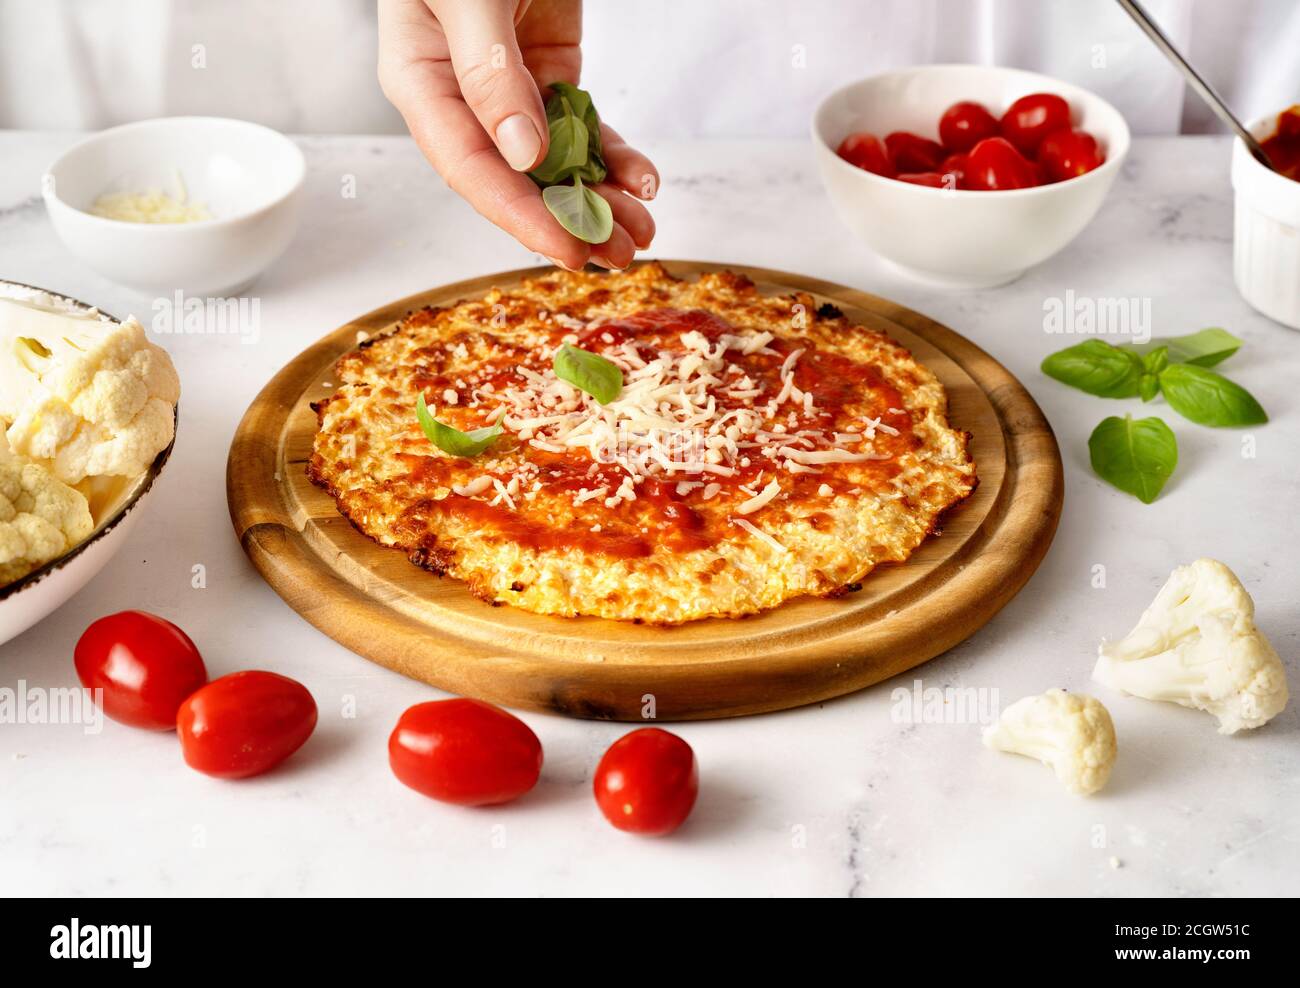 Le mani della donna spruzzano foglie di basilico fresco sulla parte superiore della crosta di pizza del cavolfiore. Keto dieta koncept. Cibo sano Foto Stock